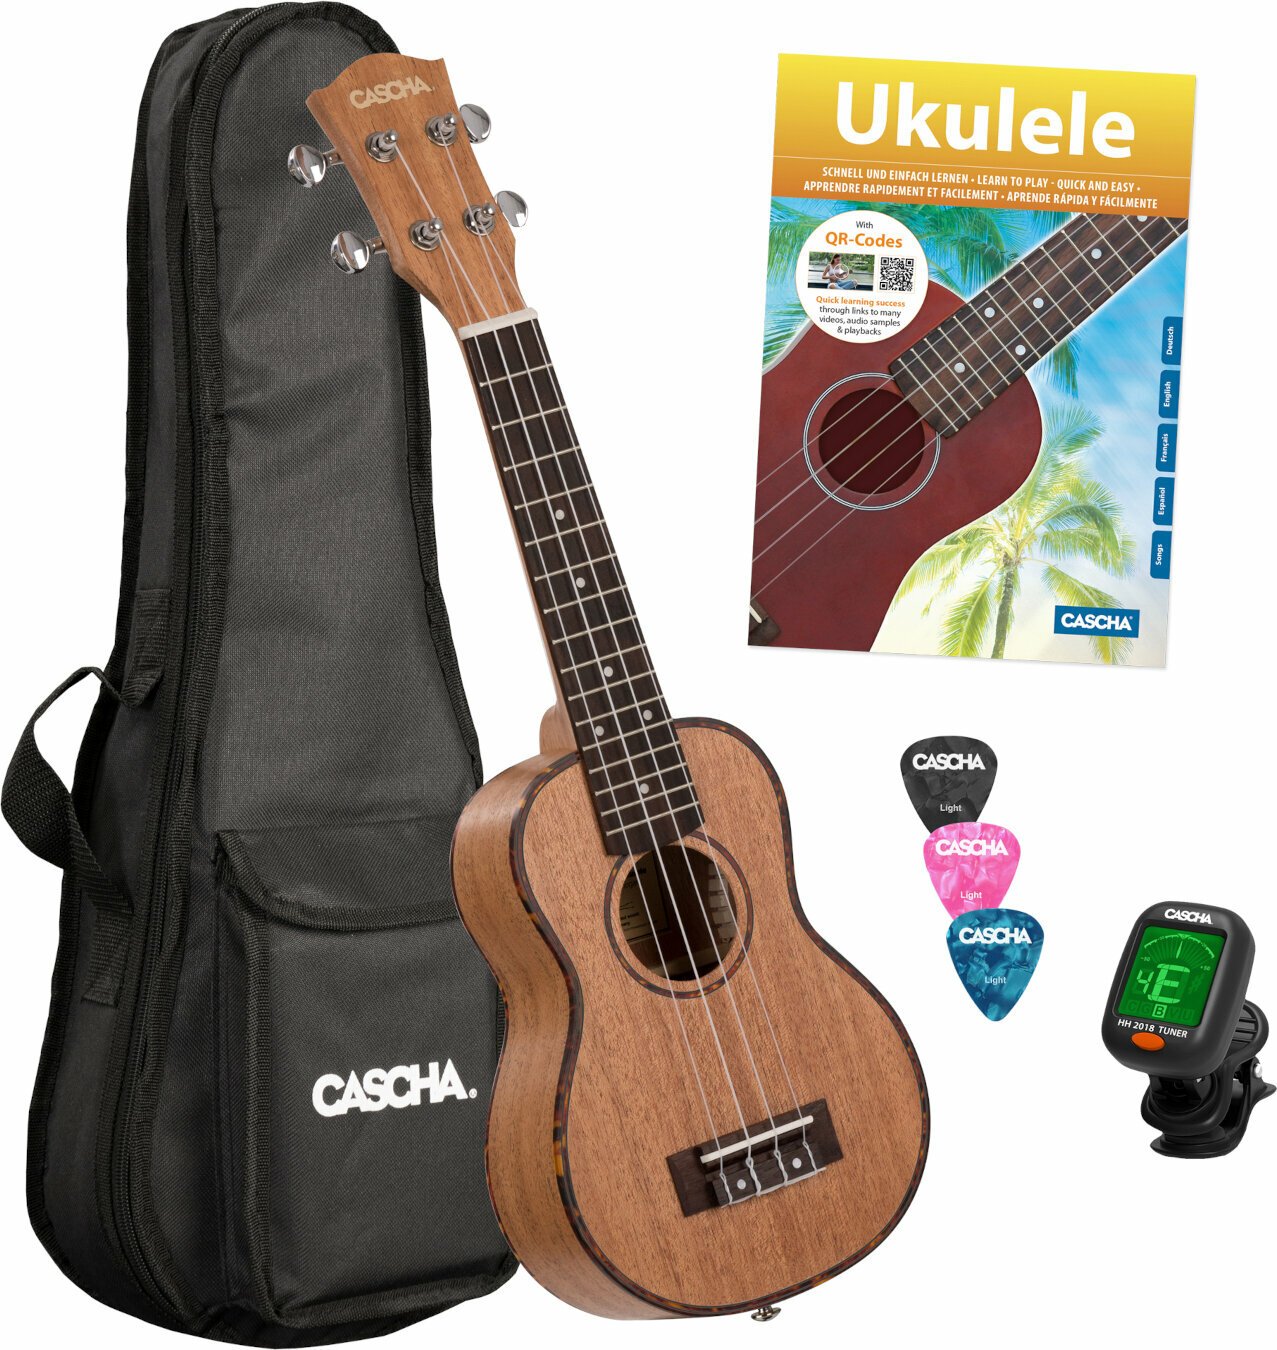 Soprano ukulele Cascha HH 2027 Premium Soprano ukulele Natural